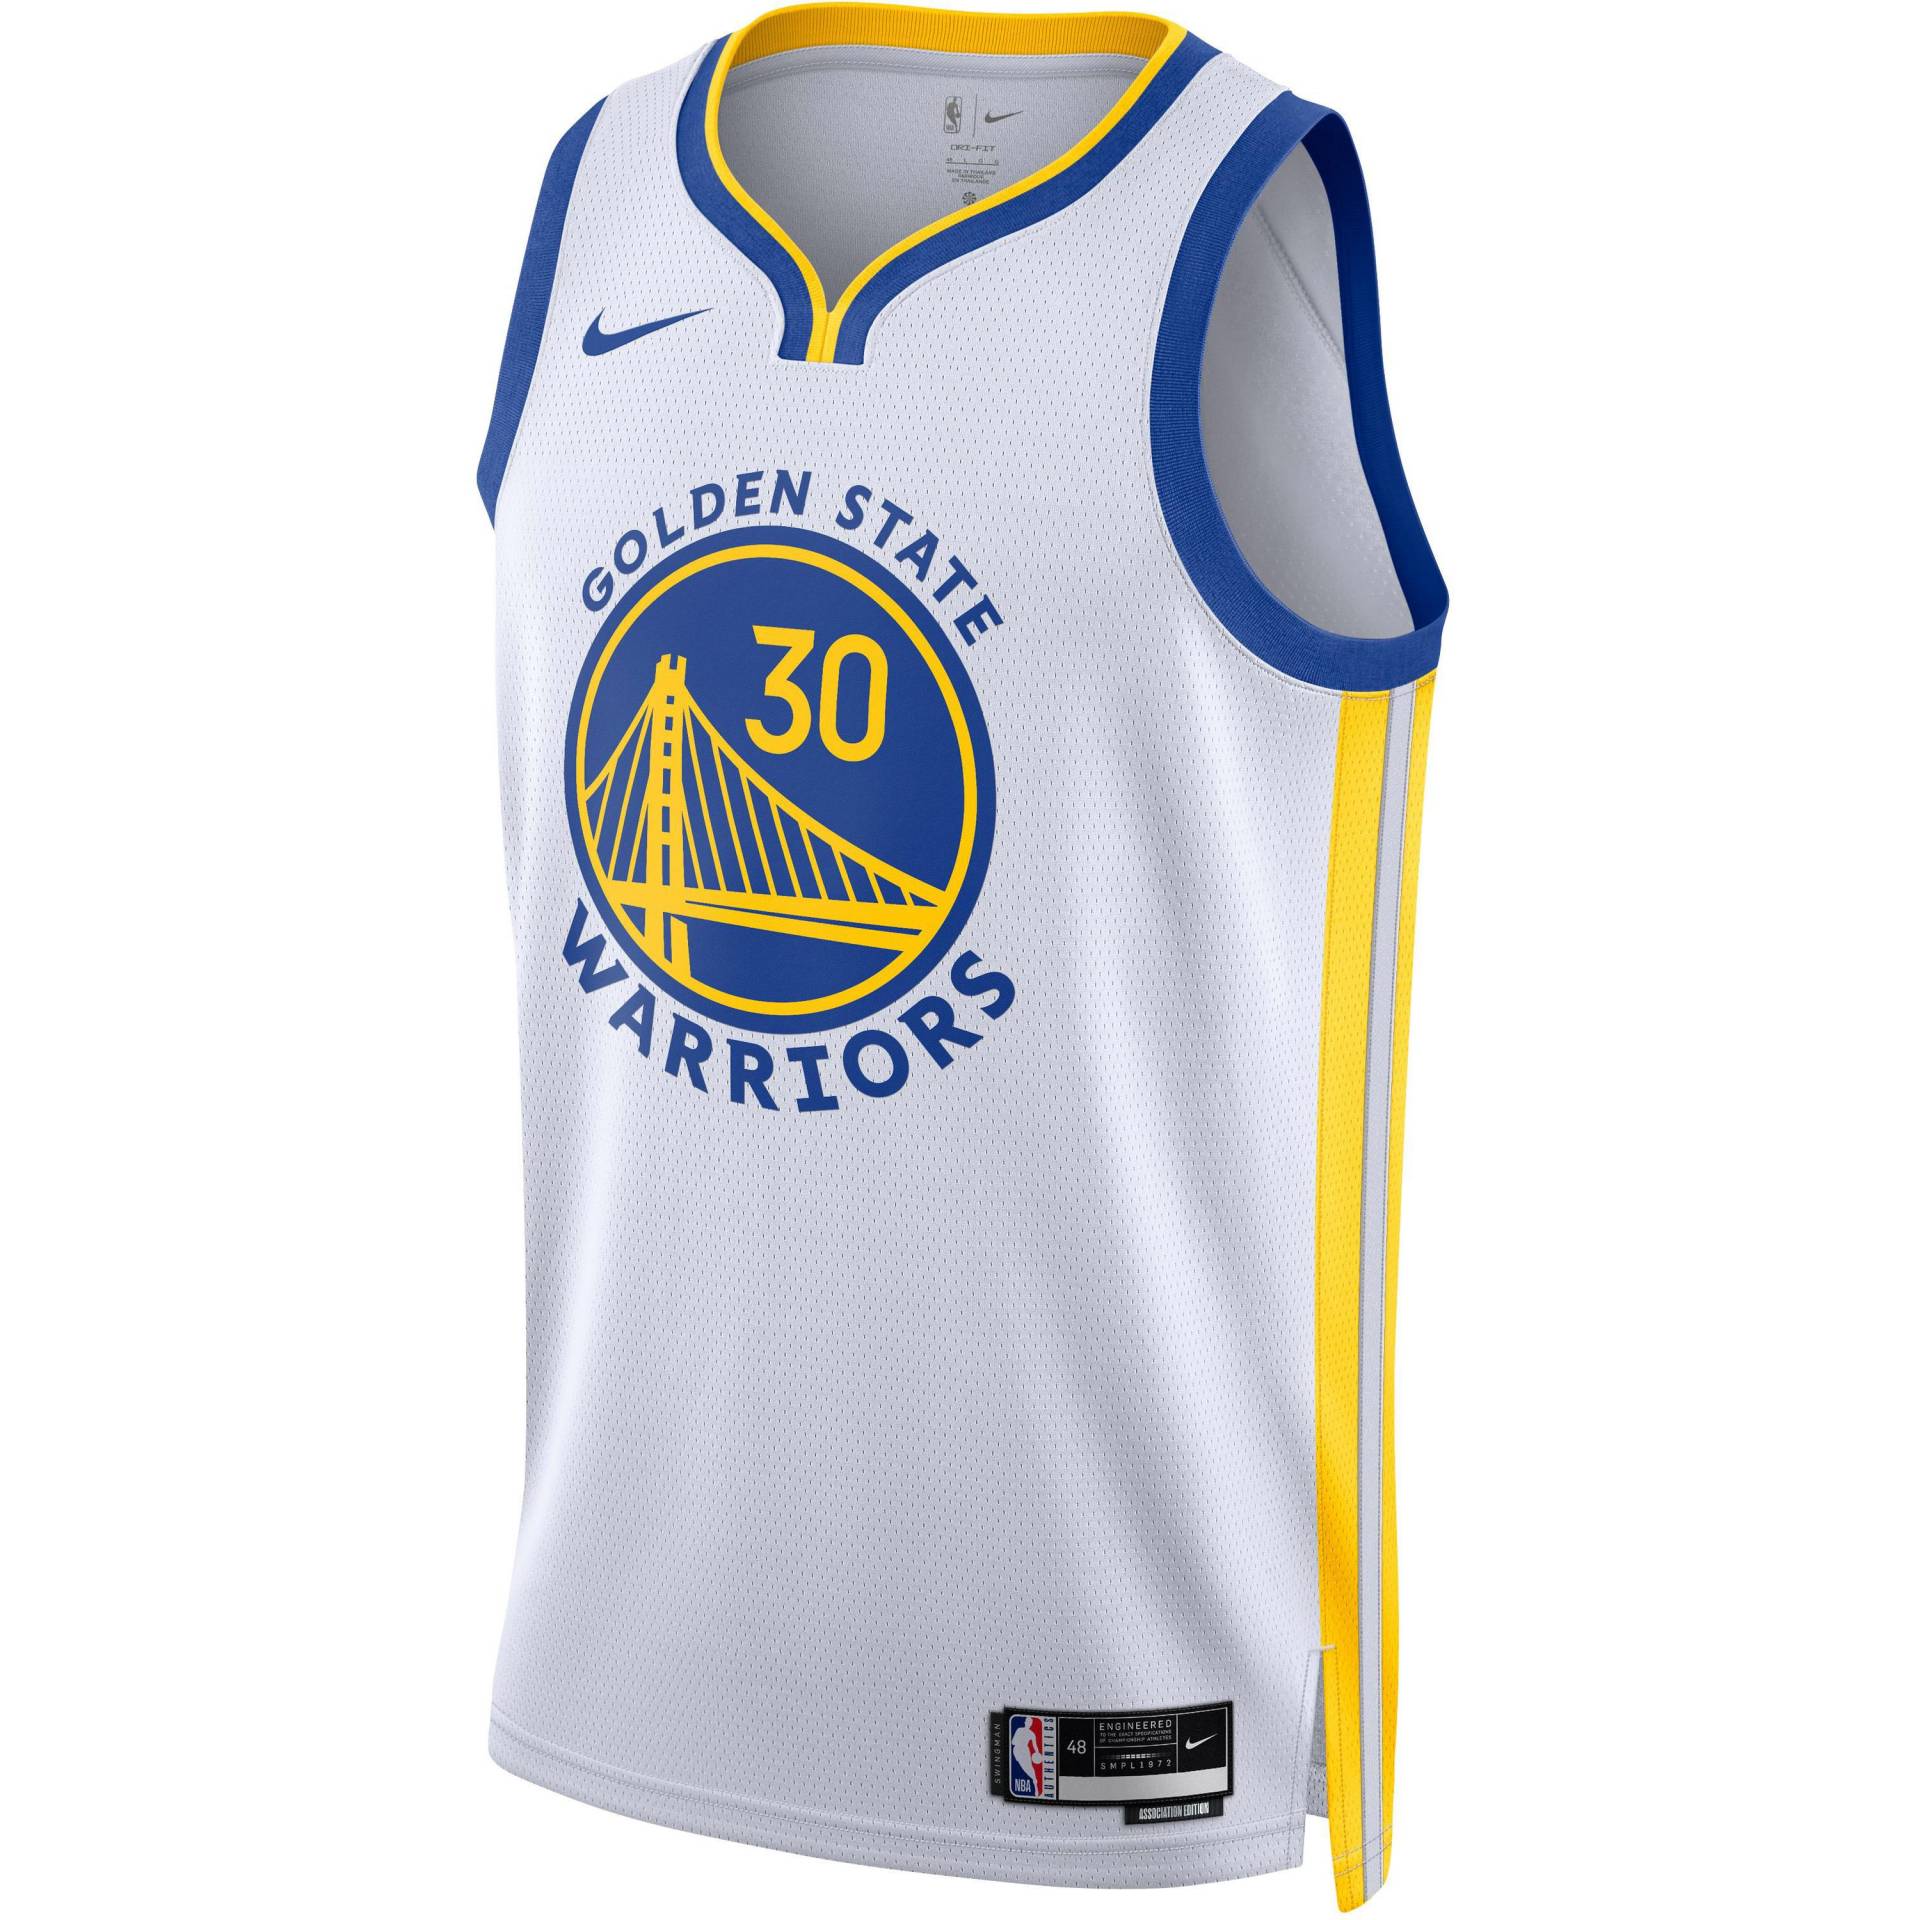 Nike Stephen Curry Golden State Warriors Spielertrikot Herren von Nike